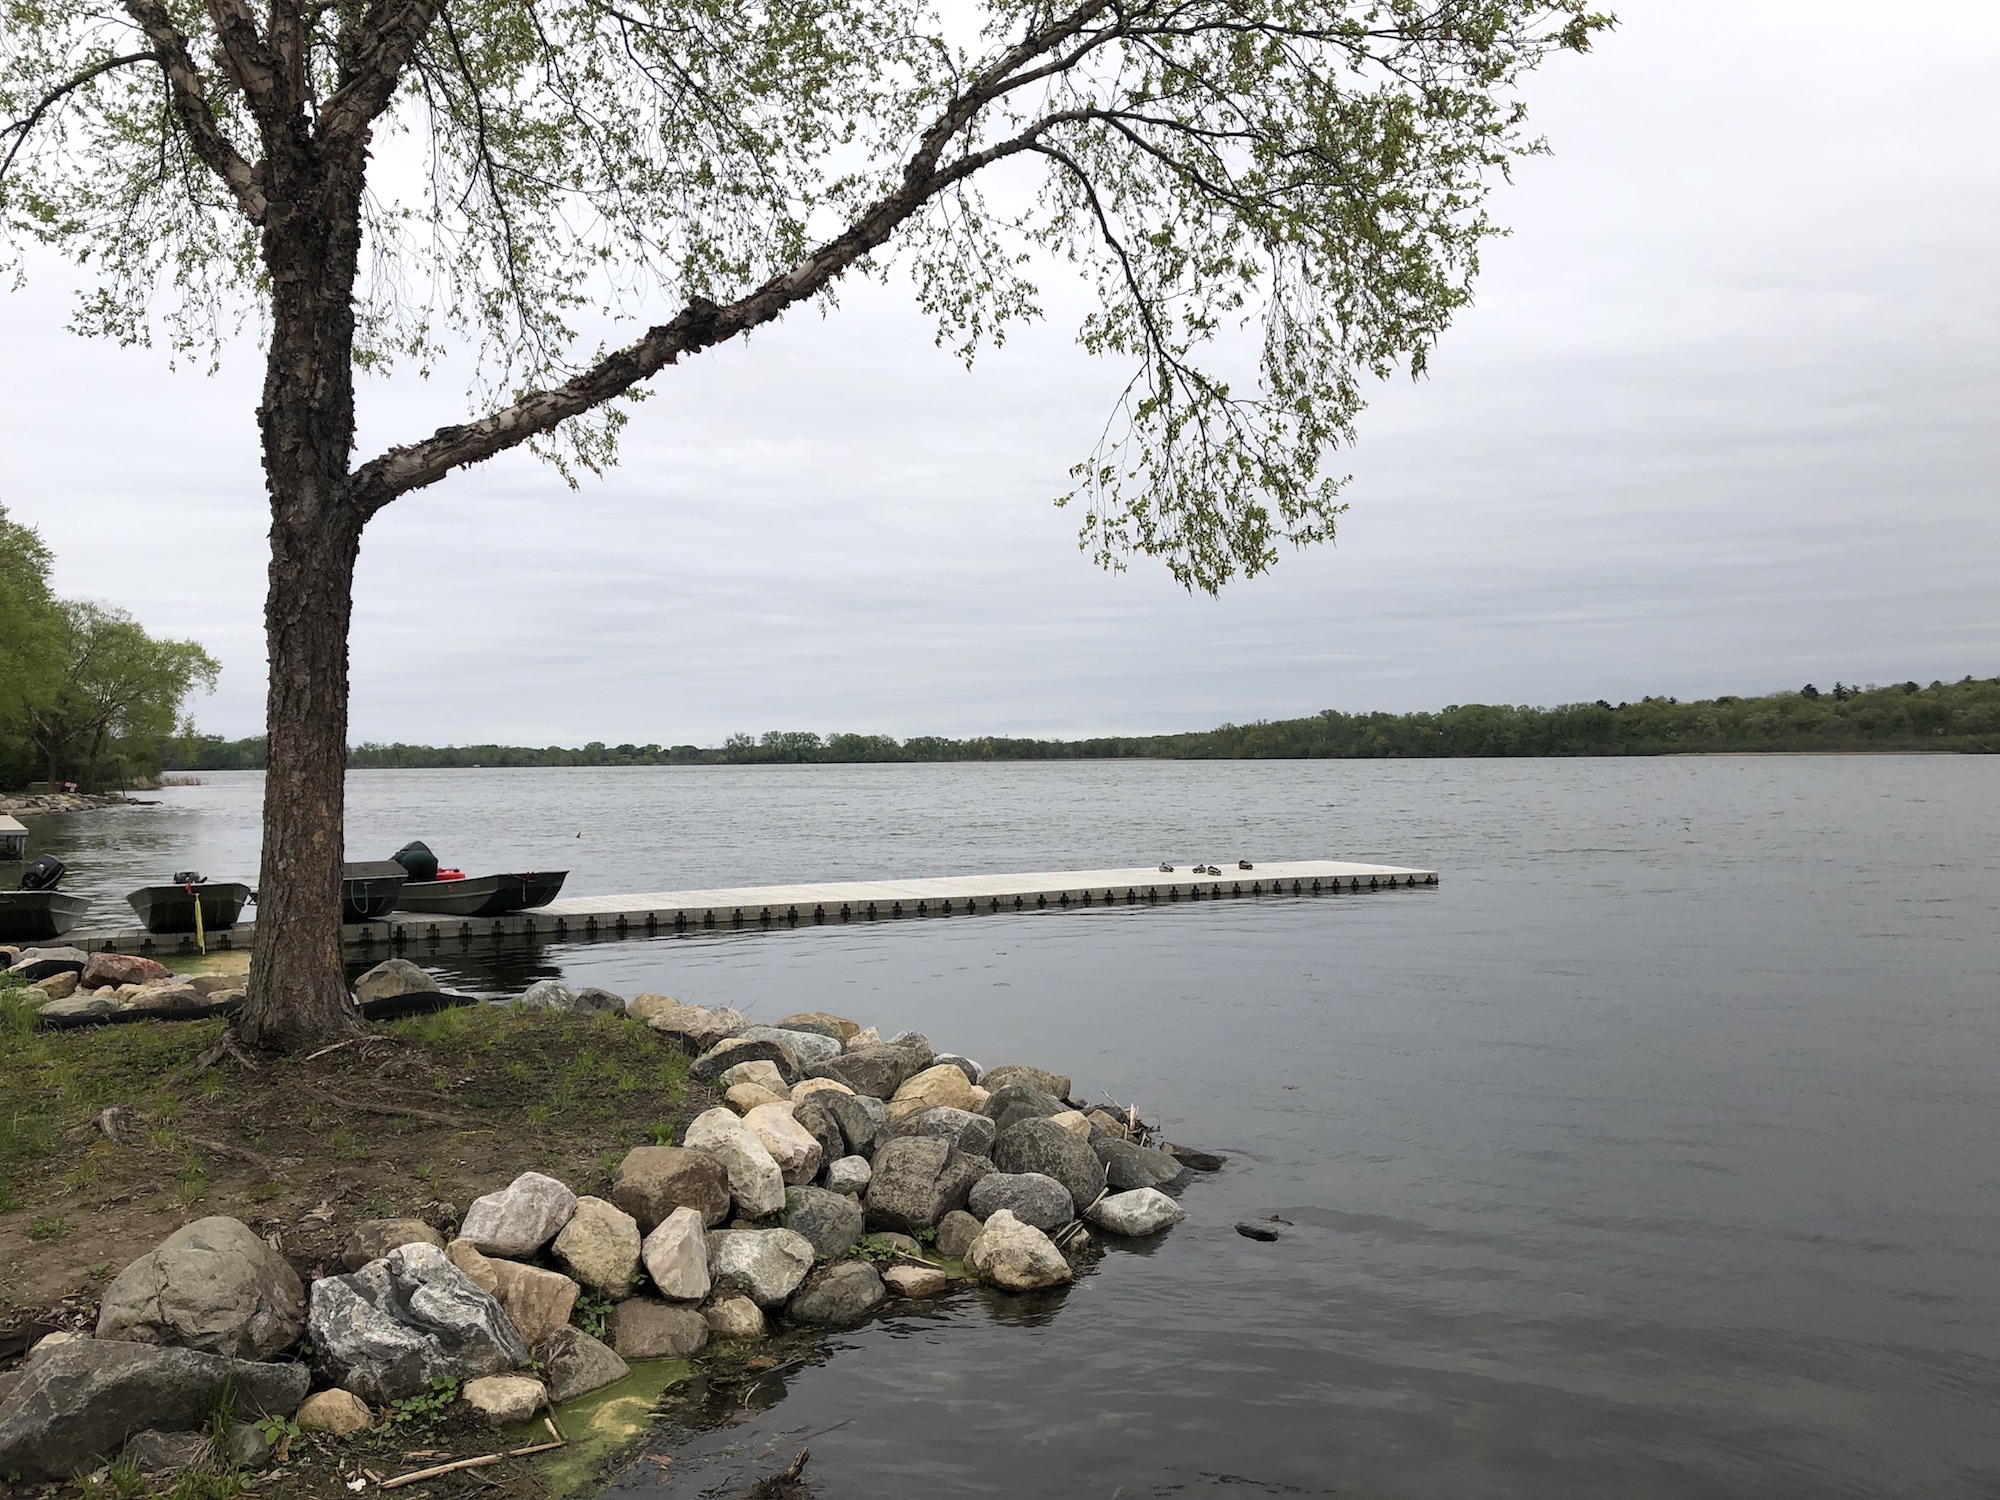 Lake Wingra on May 17, 2019.